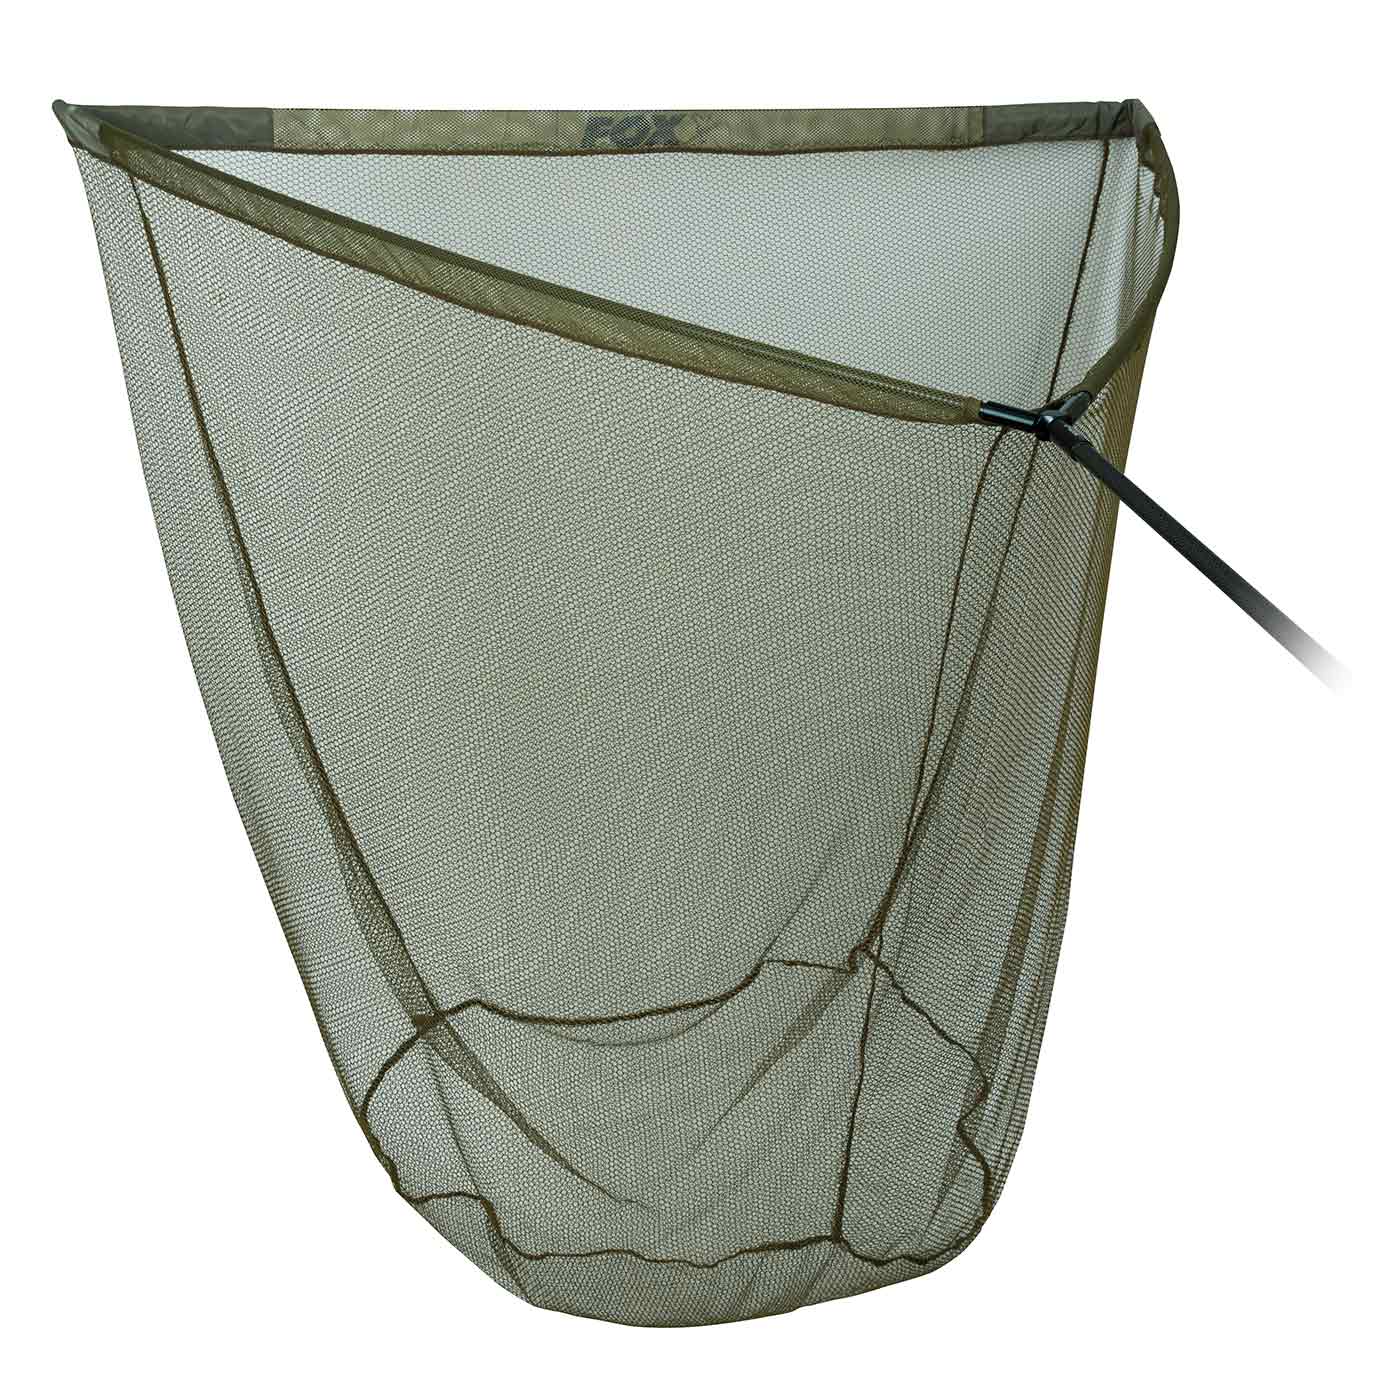 Large fish landing net